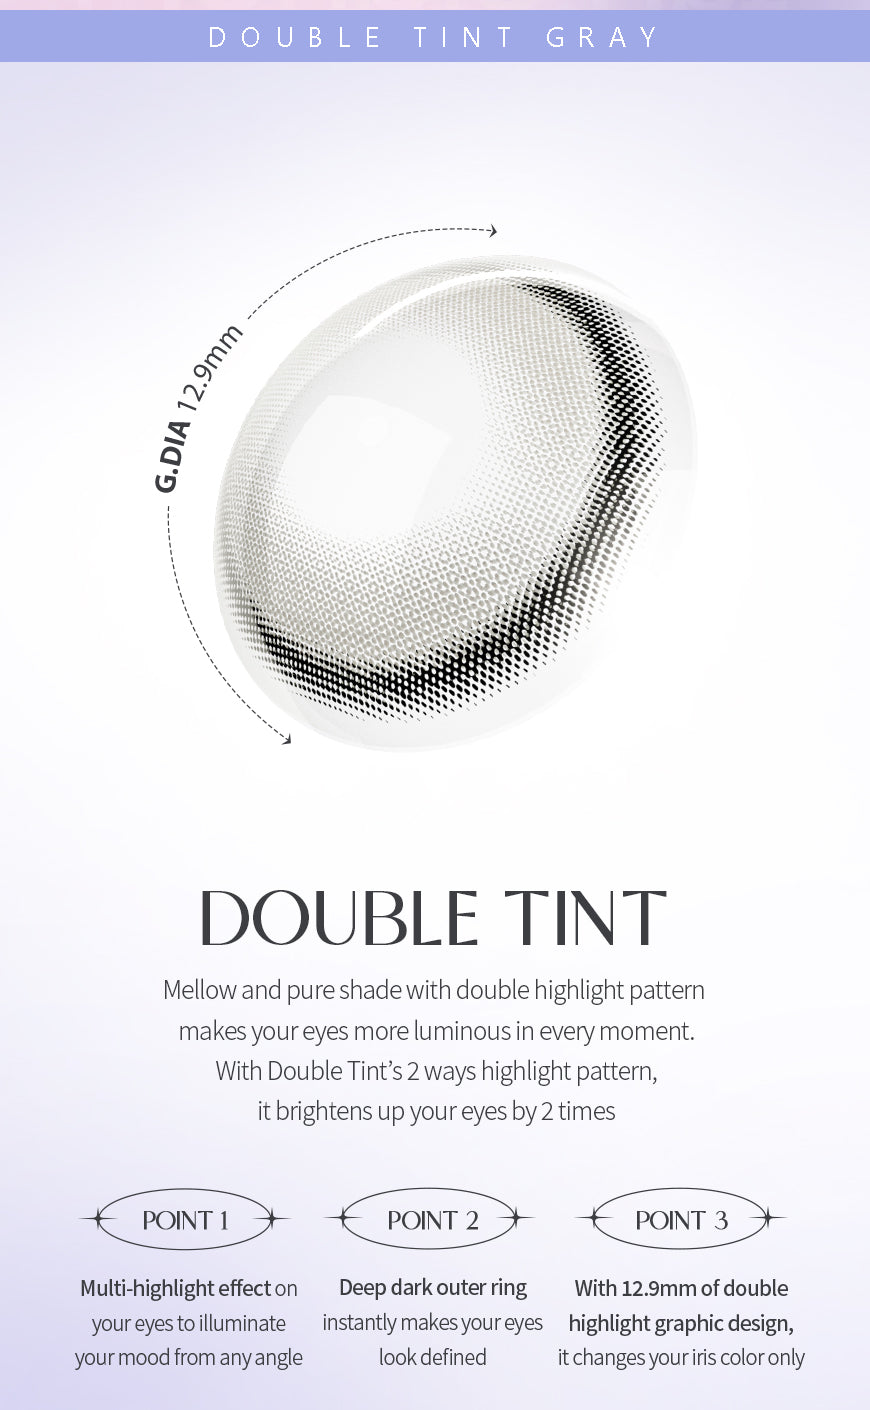 [Ready] O-Lens Double Tint Gray | Daily 5 Pairs